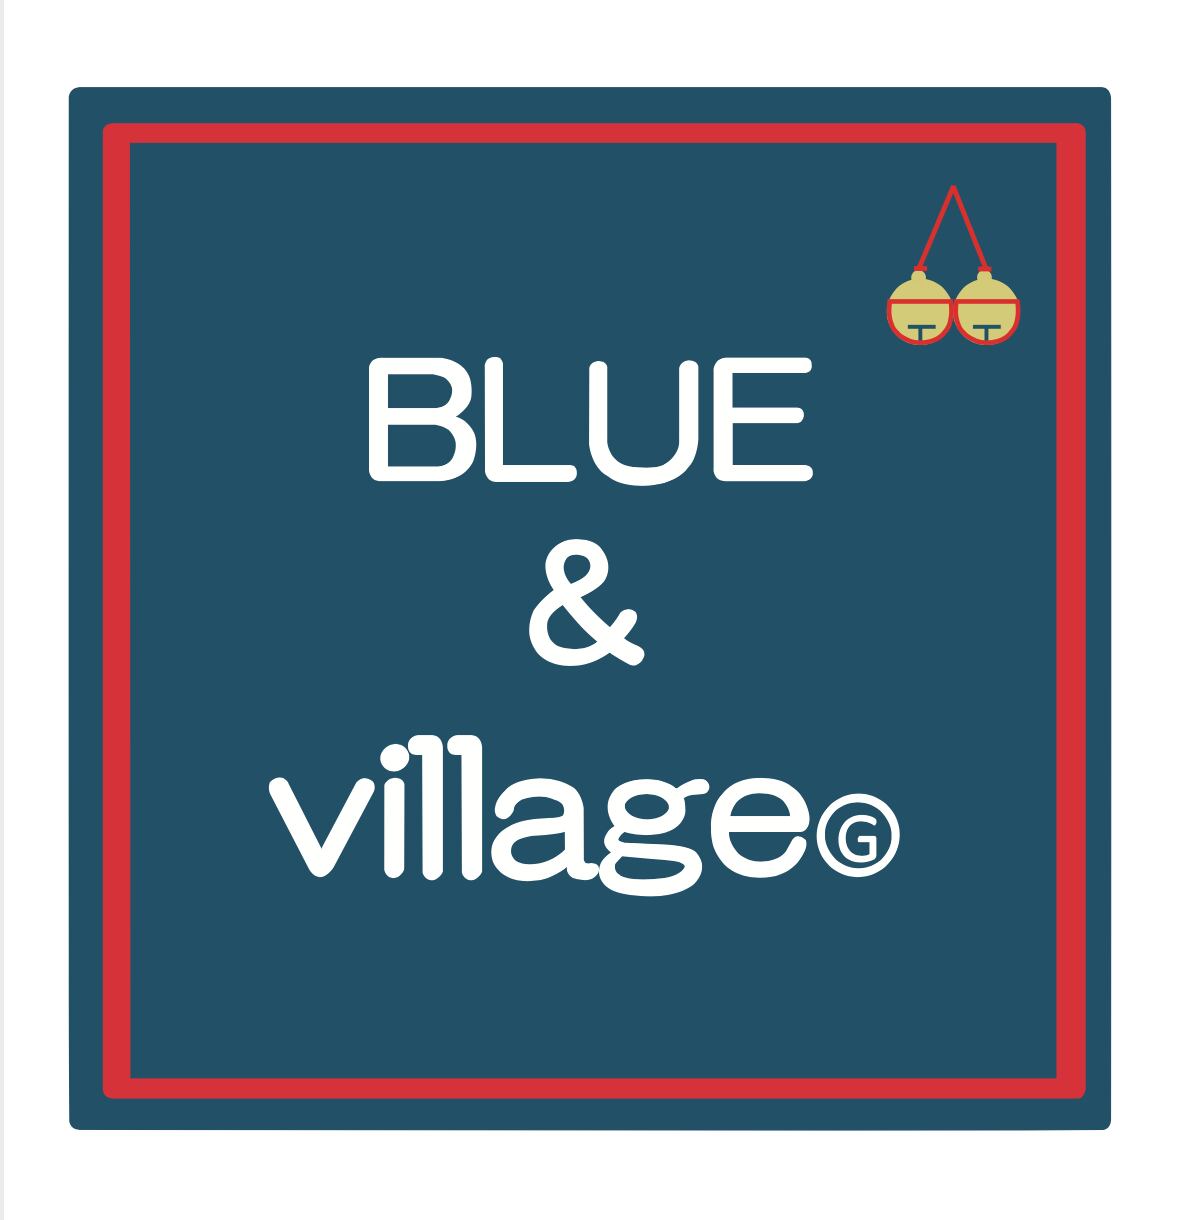 BLUE&village